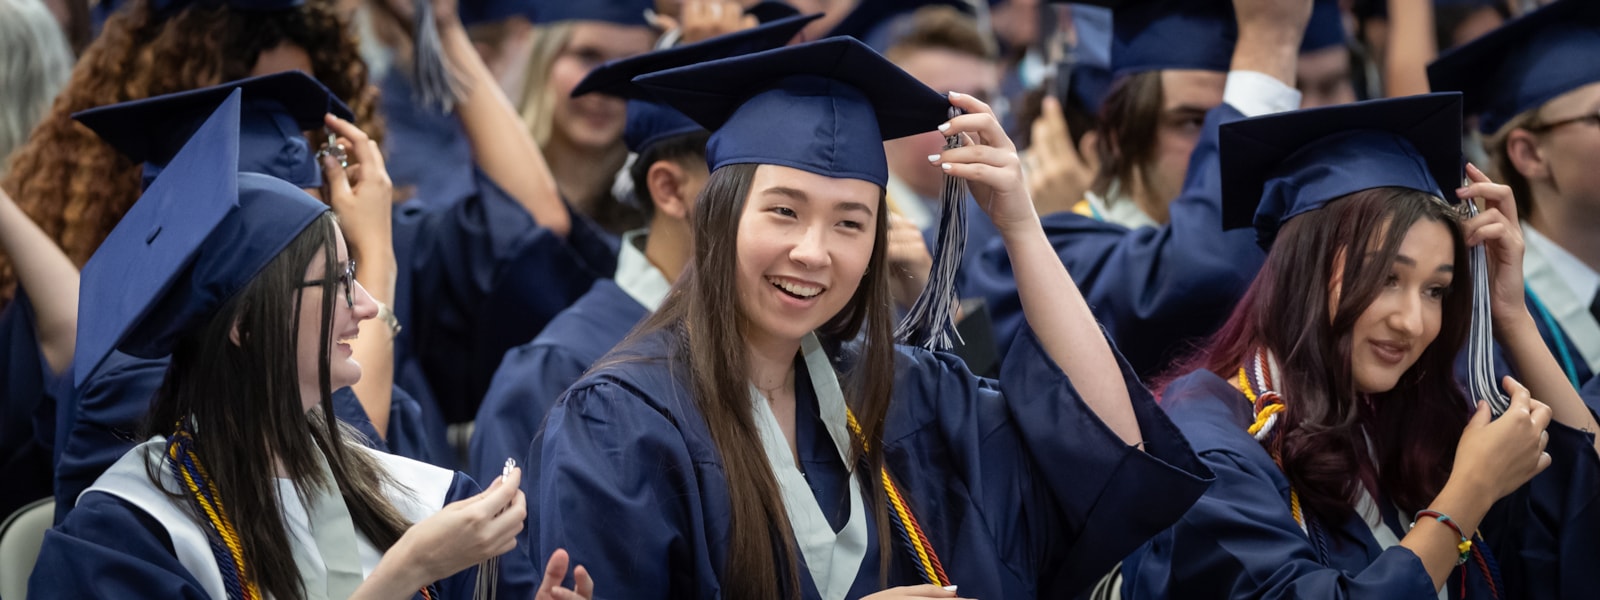 Graduates smiling at graduation